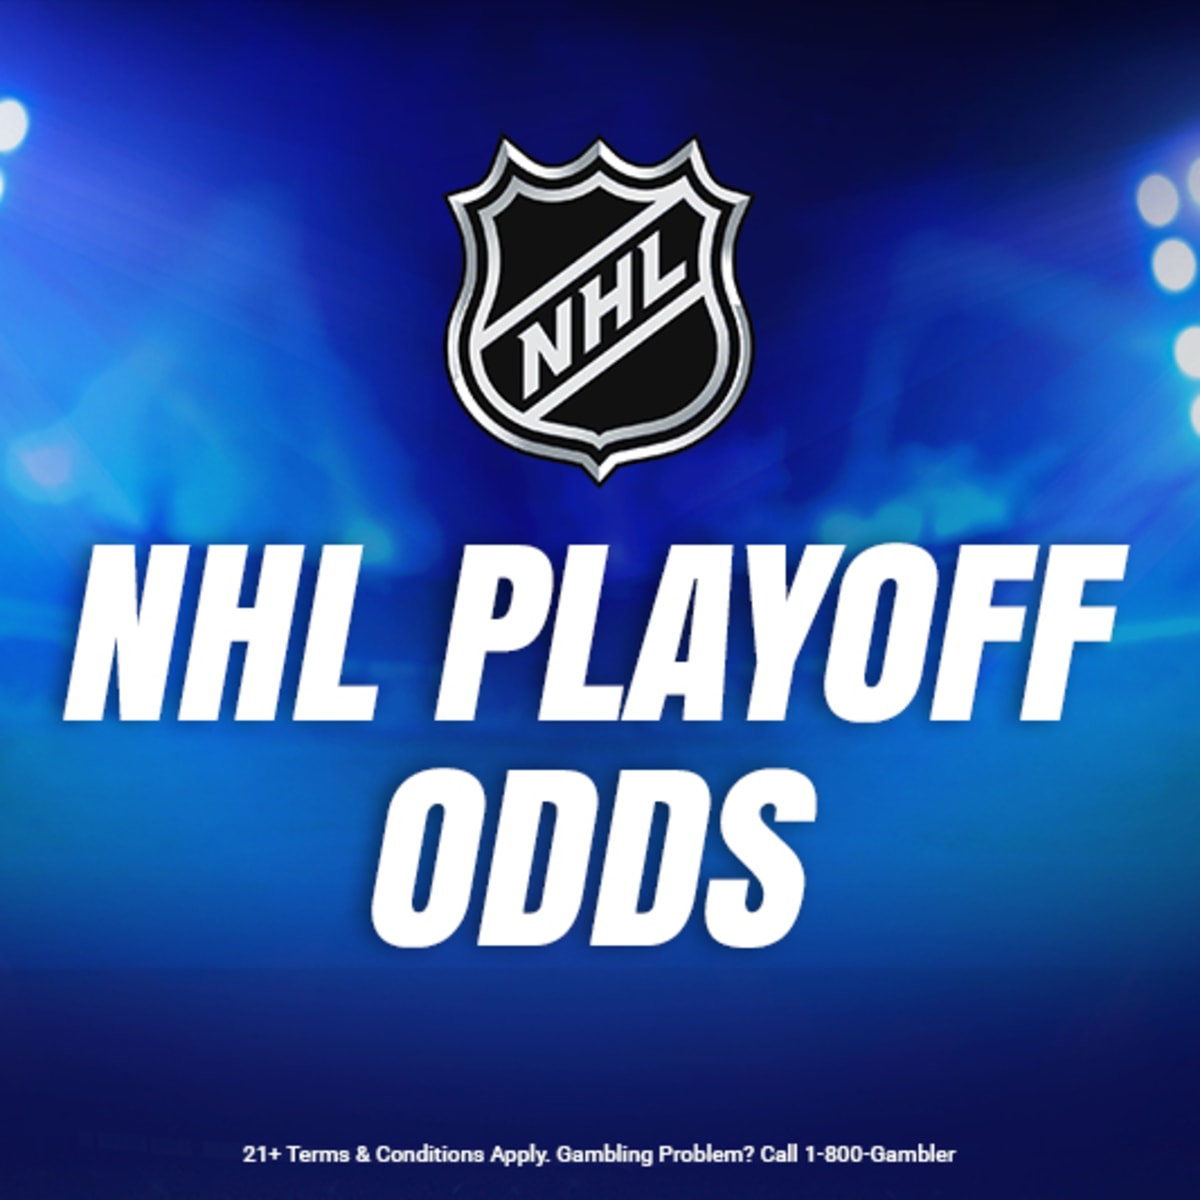 Devils vs. Stars NHL predictions & picks + Bet365 promo code for